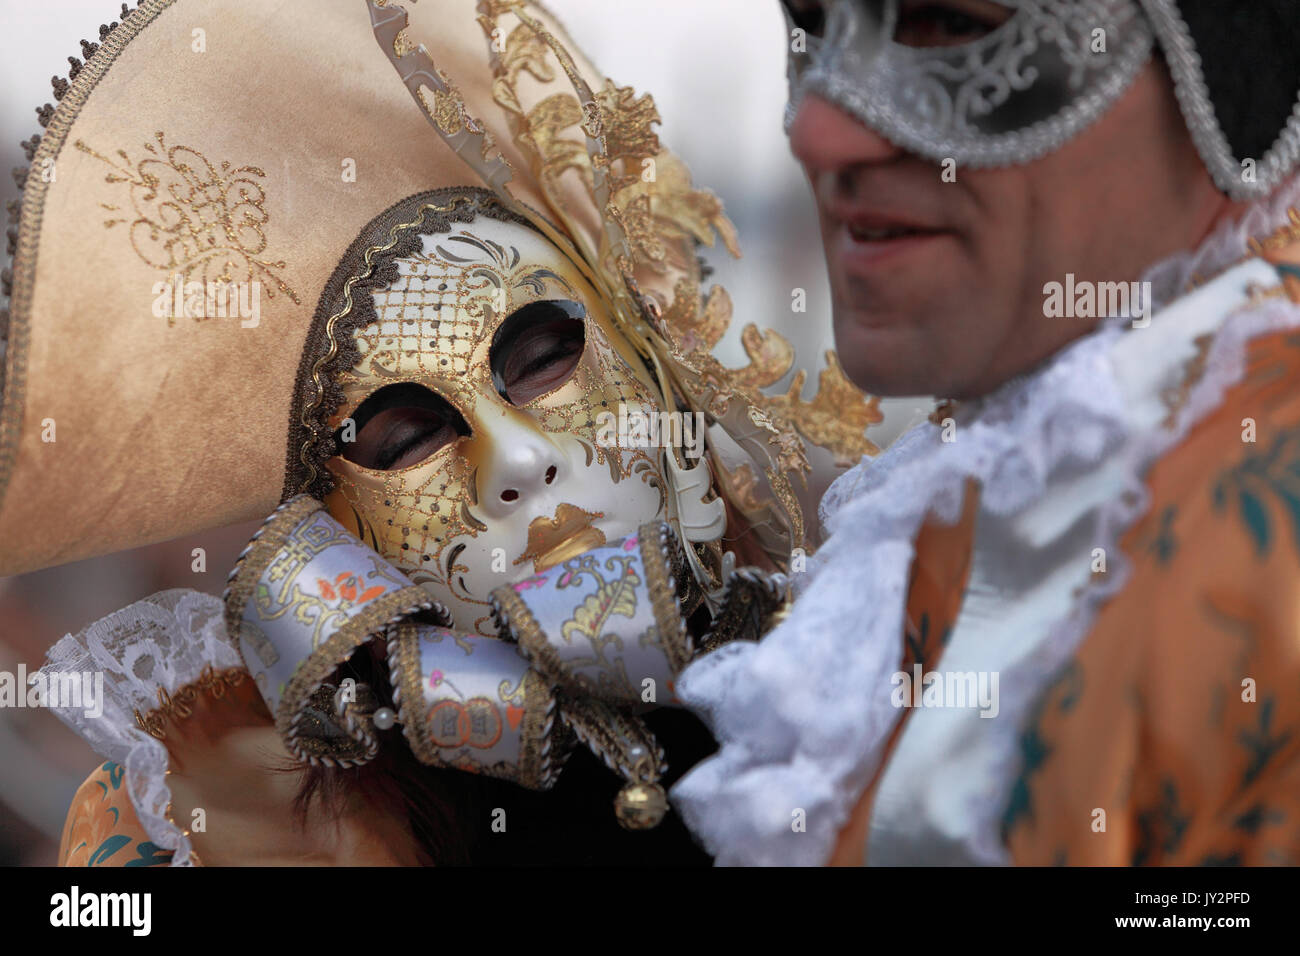 Venedig, Italien - Ferbruary 26 Th, 2011: Schließen Sie herauf Bild von zwei hellbraune Masken während der komputerhalle von Venedig der Karneval von Venedig ('Carnevale di Venezia Stockfoto